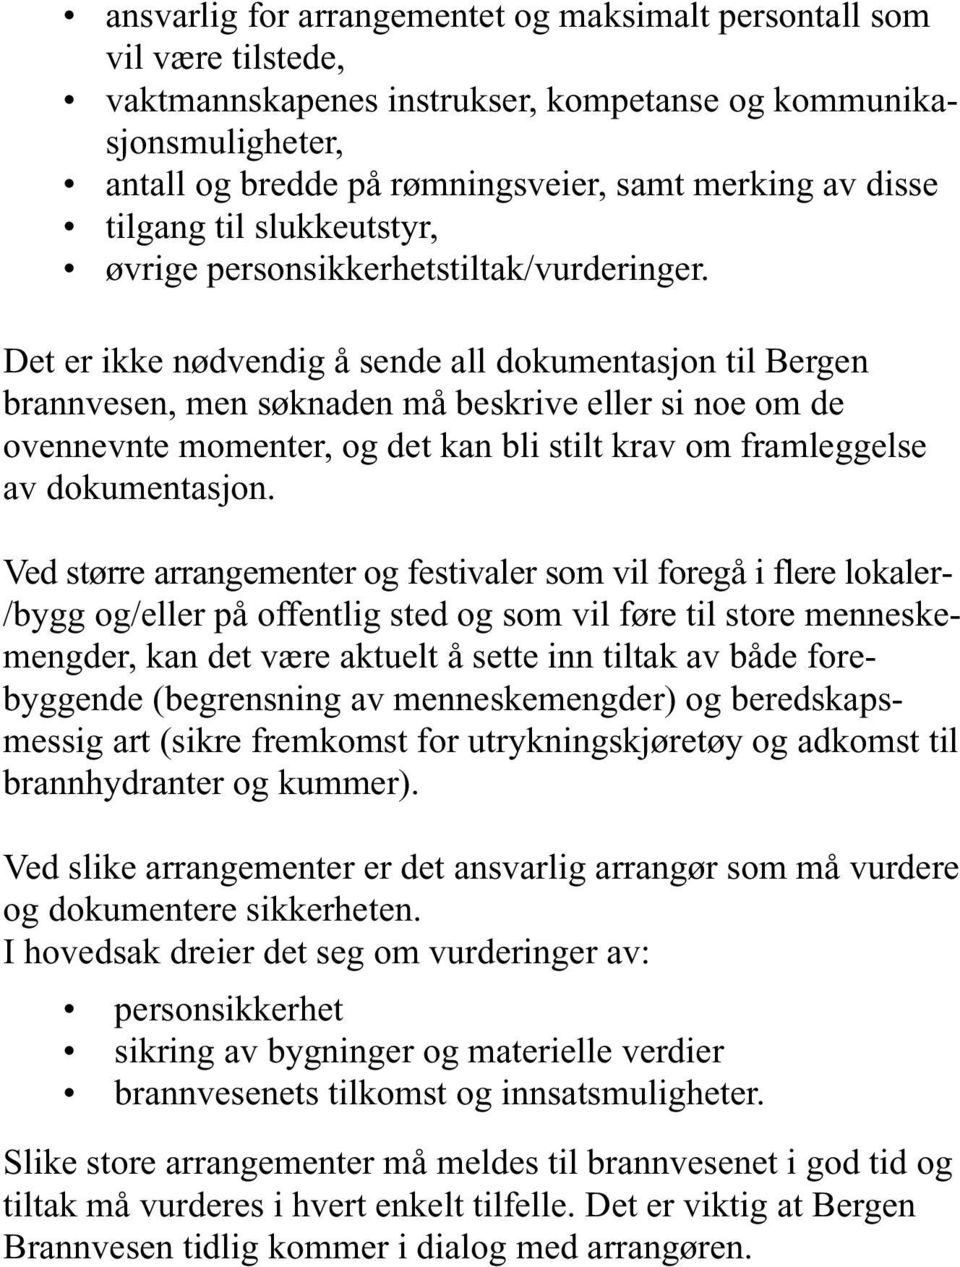 Det er ikke nødvendig å sende all dokumentasjon til Bergen brannvesen, men søknaden må beskrive eller si noe om de ovennevnte momenter, og det kan bli stilt krav om framleggelse av dokumentasjon.